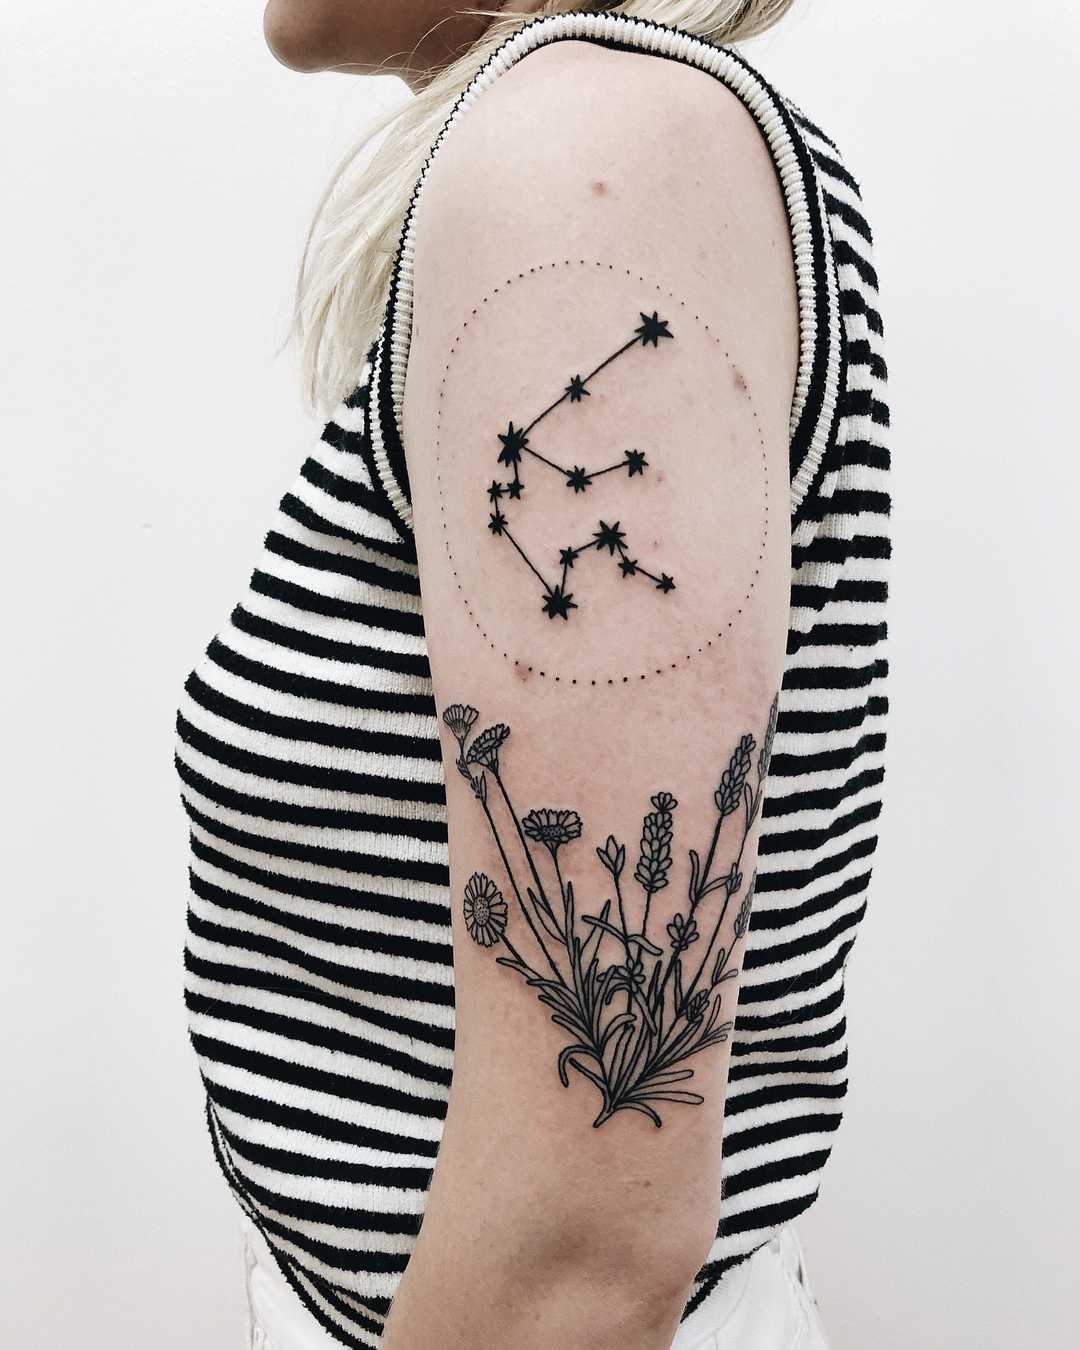 Aquarius constellation and wild flowers